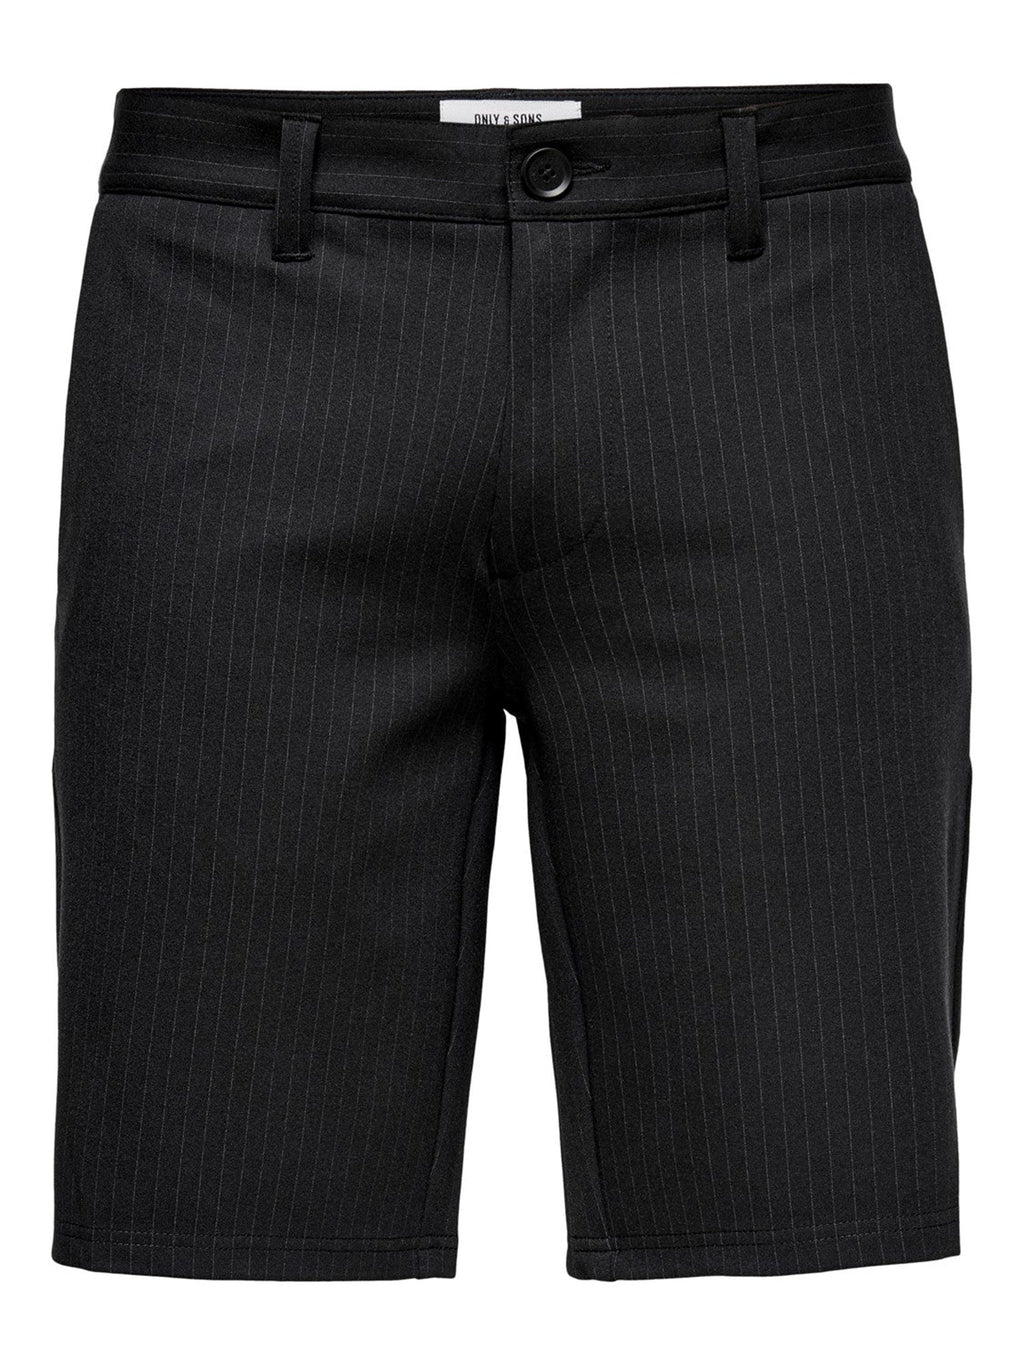 标记短裤条纹 - 黑色